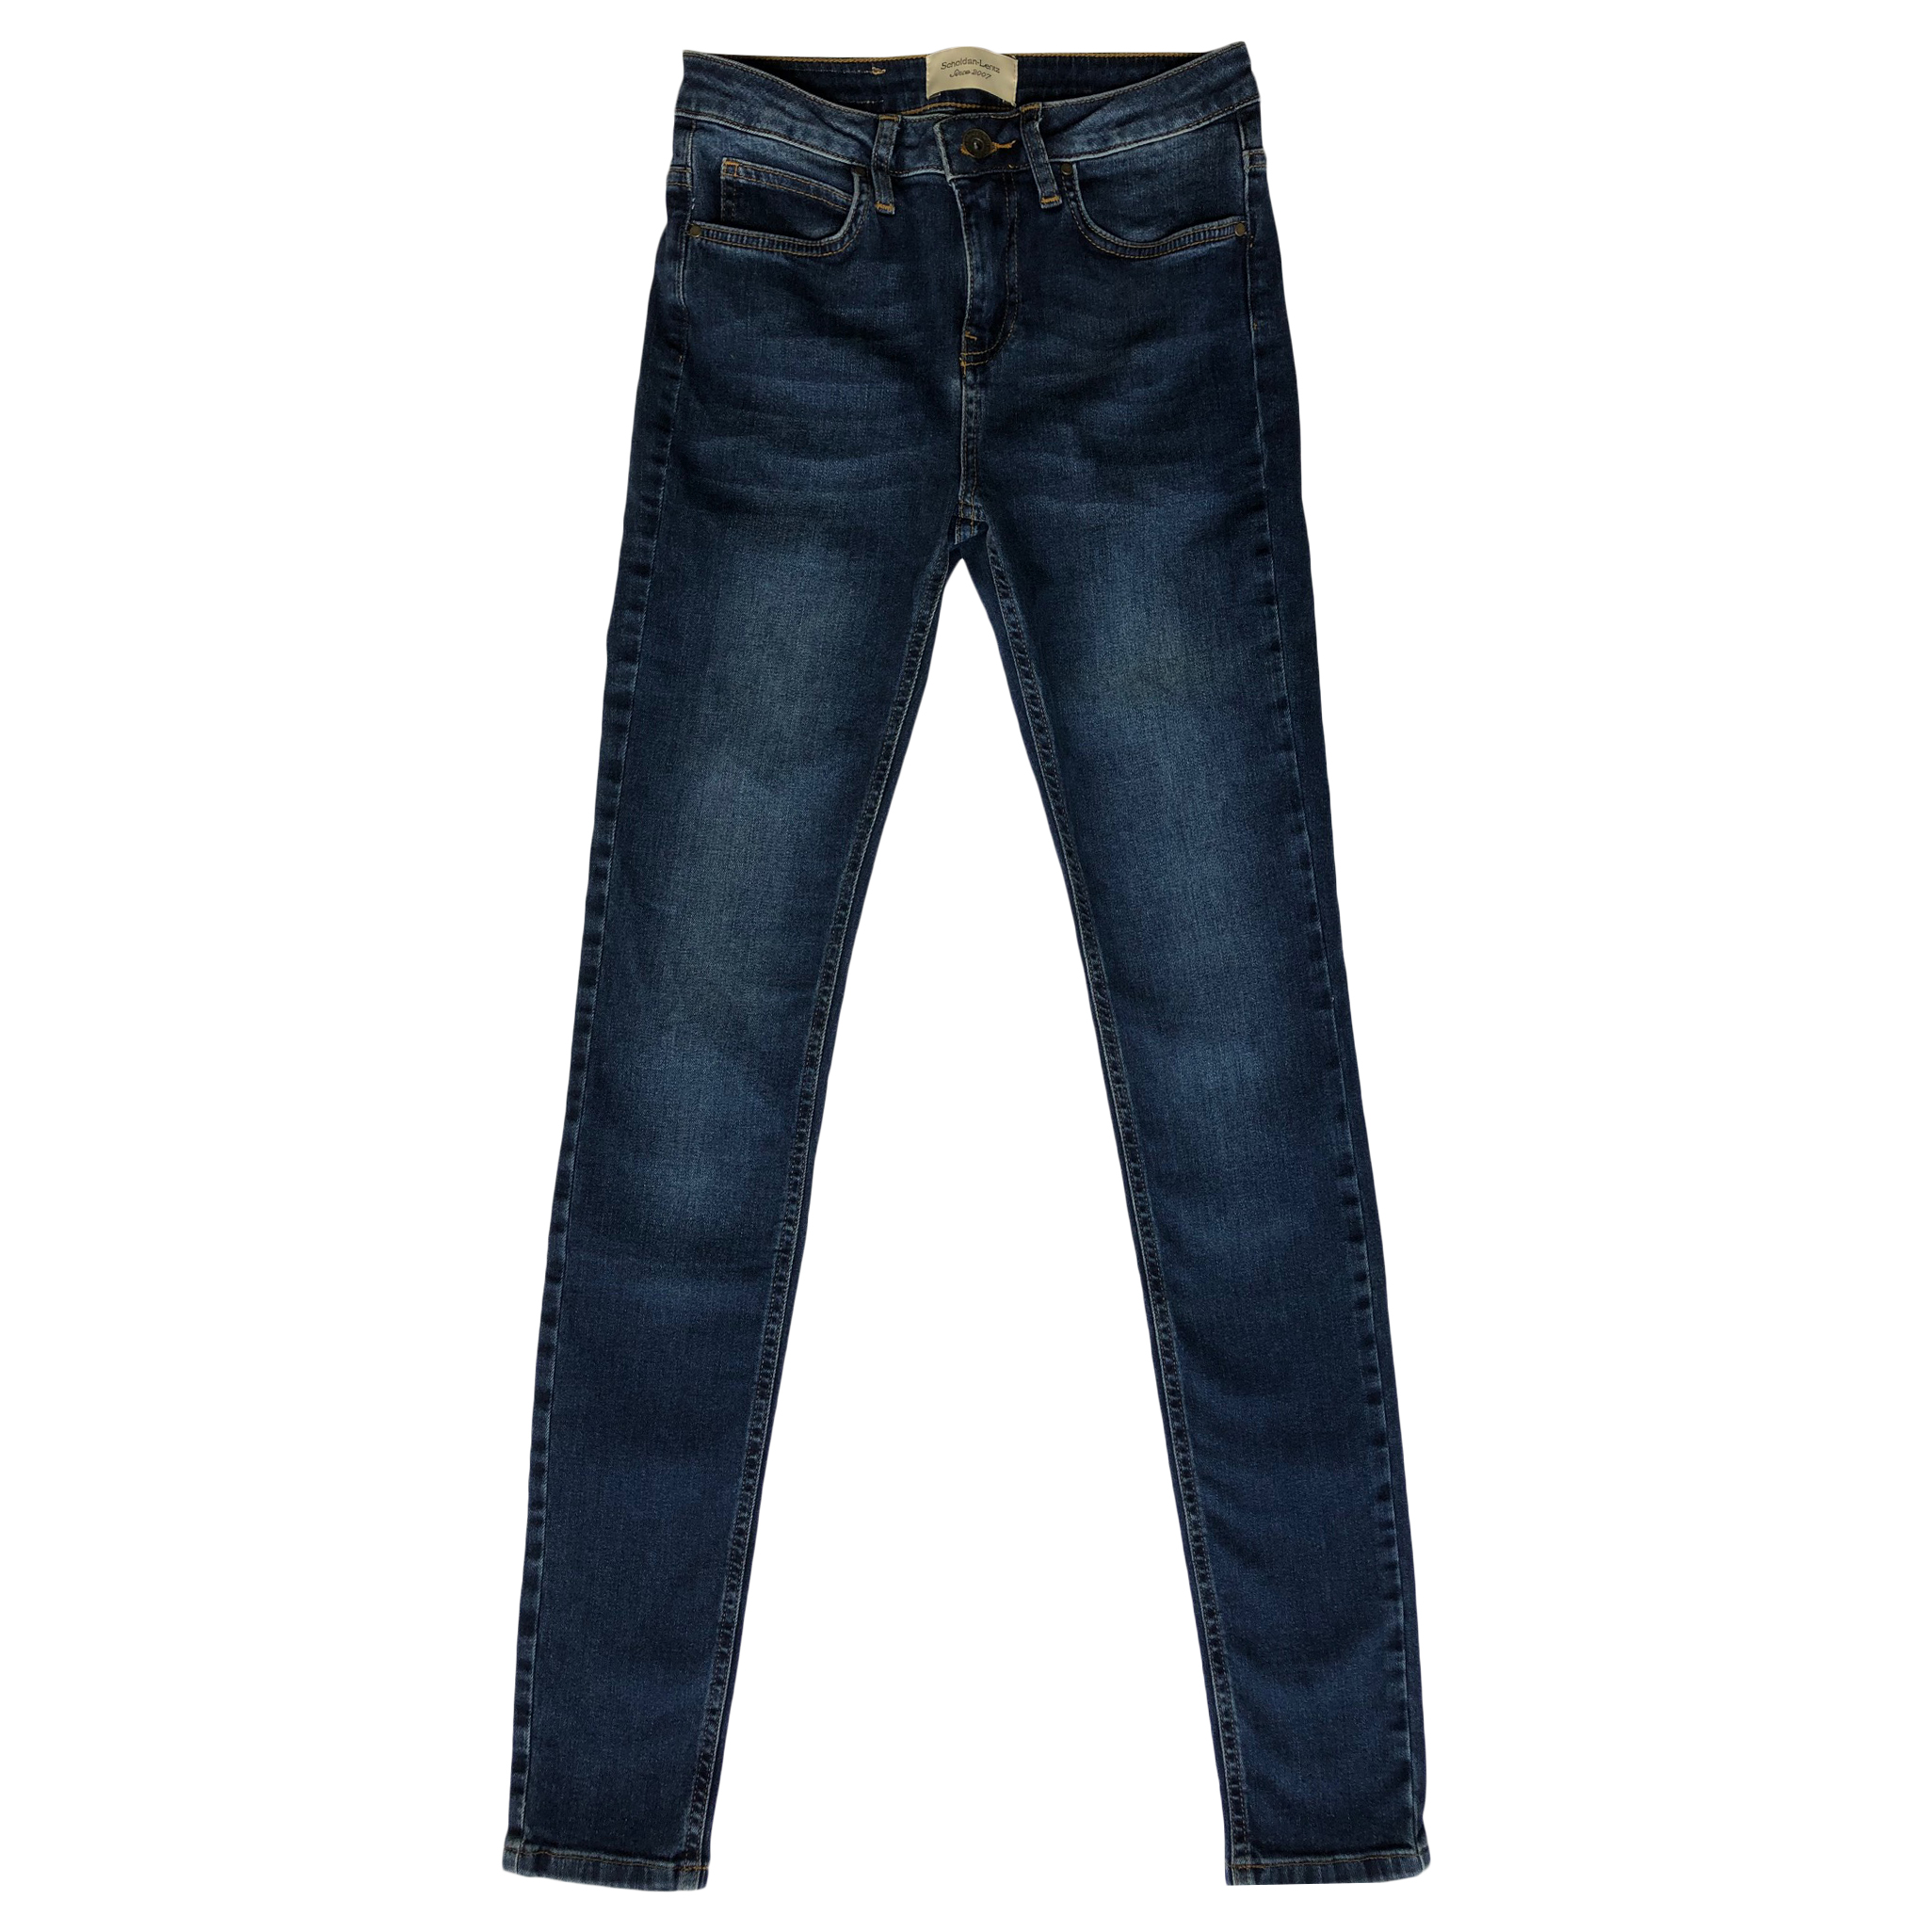 Emily High Jeans Wash 717 - Jeans - Scholdan-Lentz